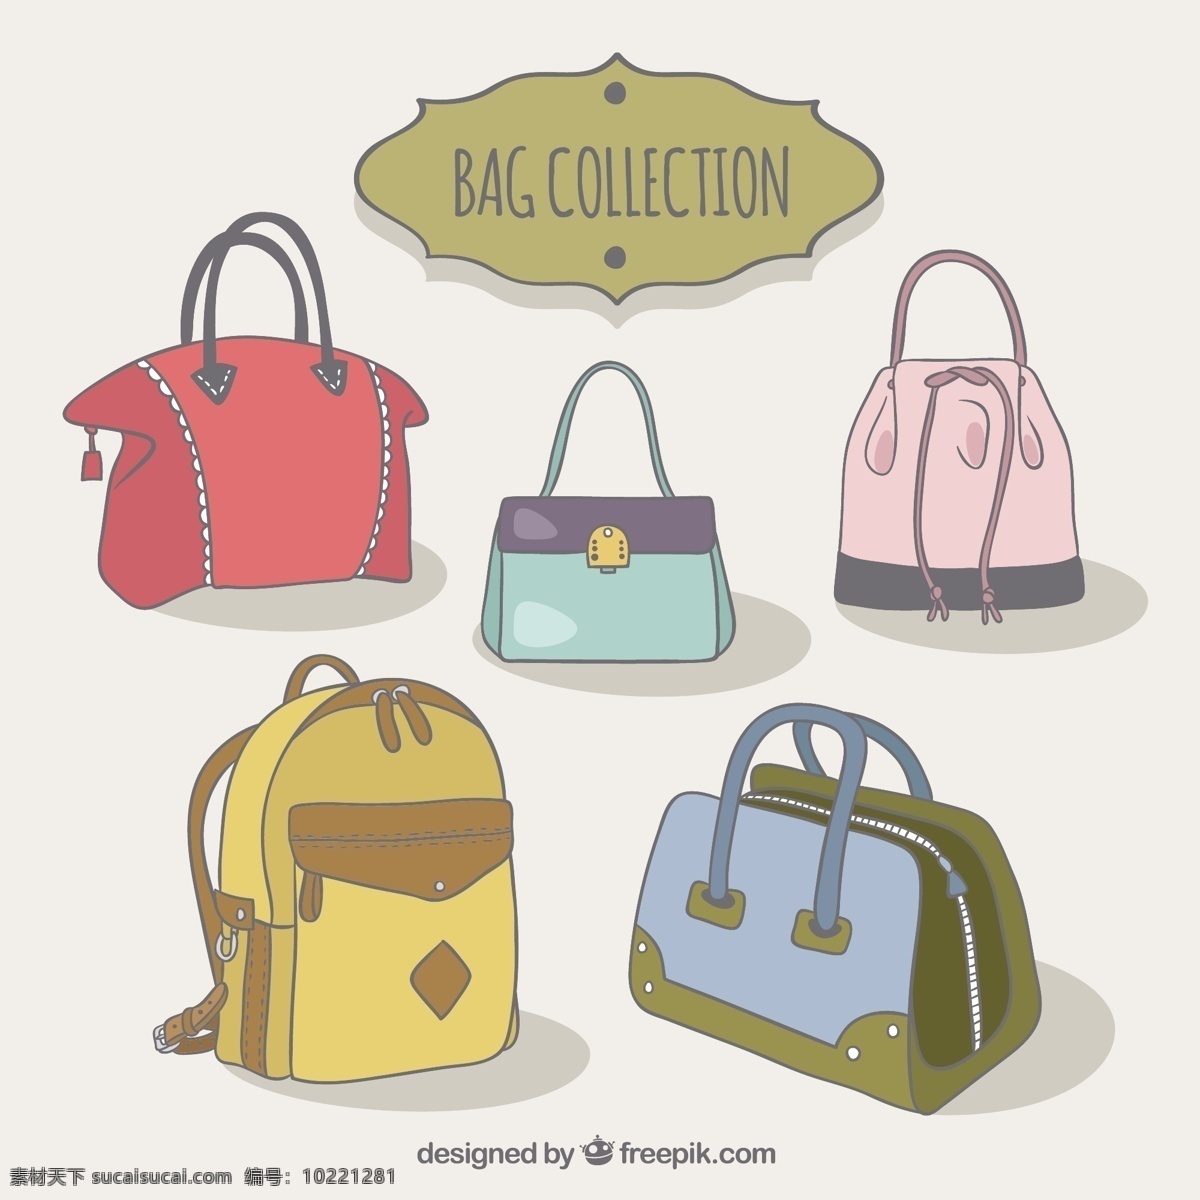 各式各样 美丽 袋子 一方面 时尚 购物 手绘 袋 优雅 商店 购物袋 背包 书包 漂亮 手袋 绘制 素描 购物者 行李 粗略 配件 品种